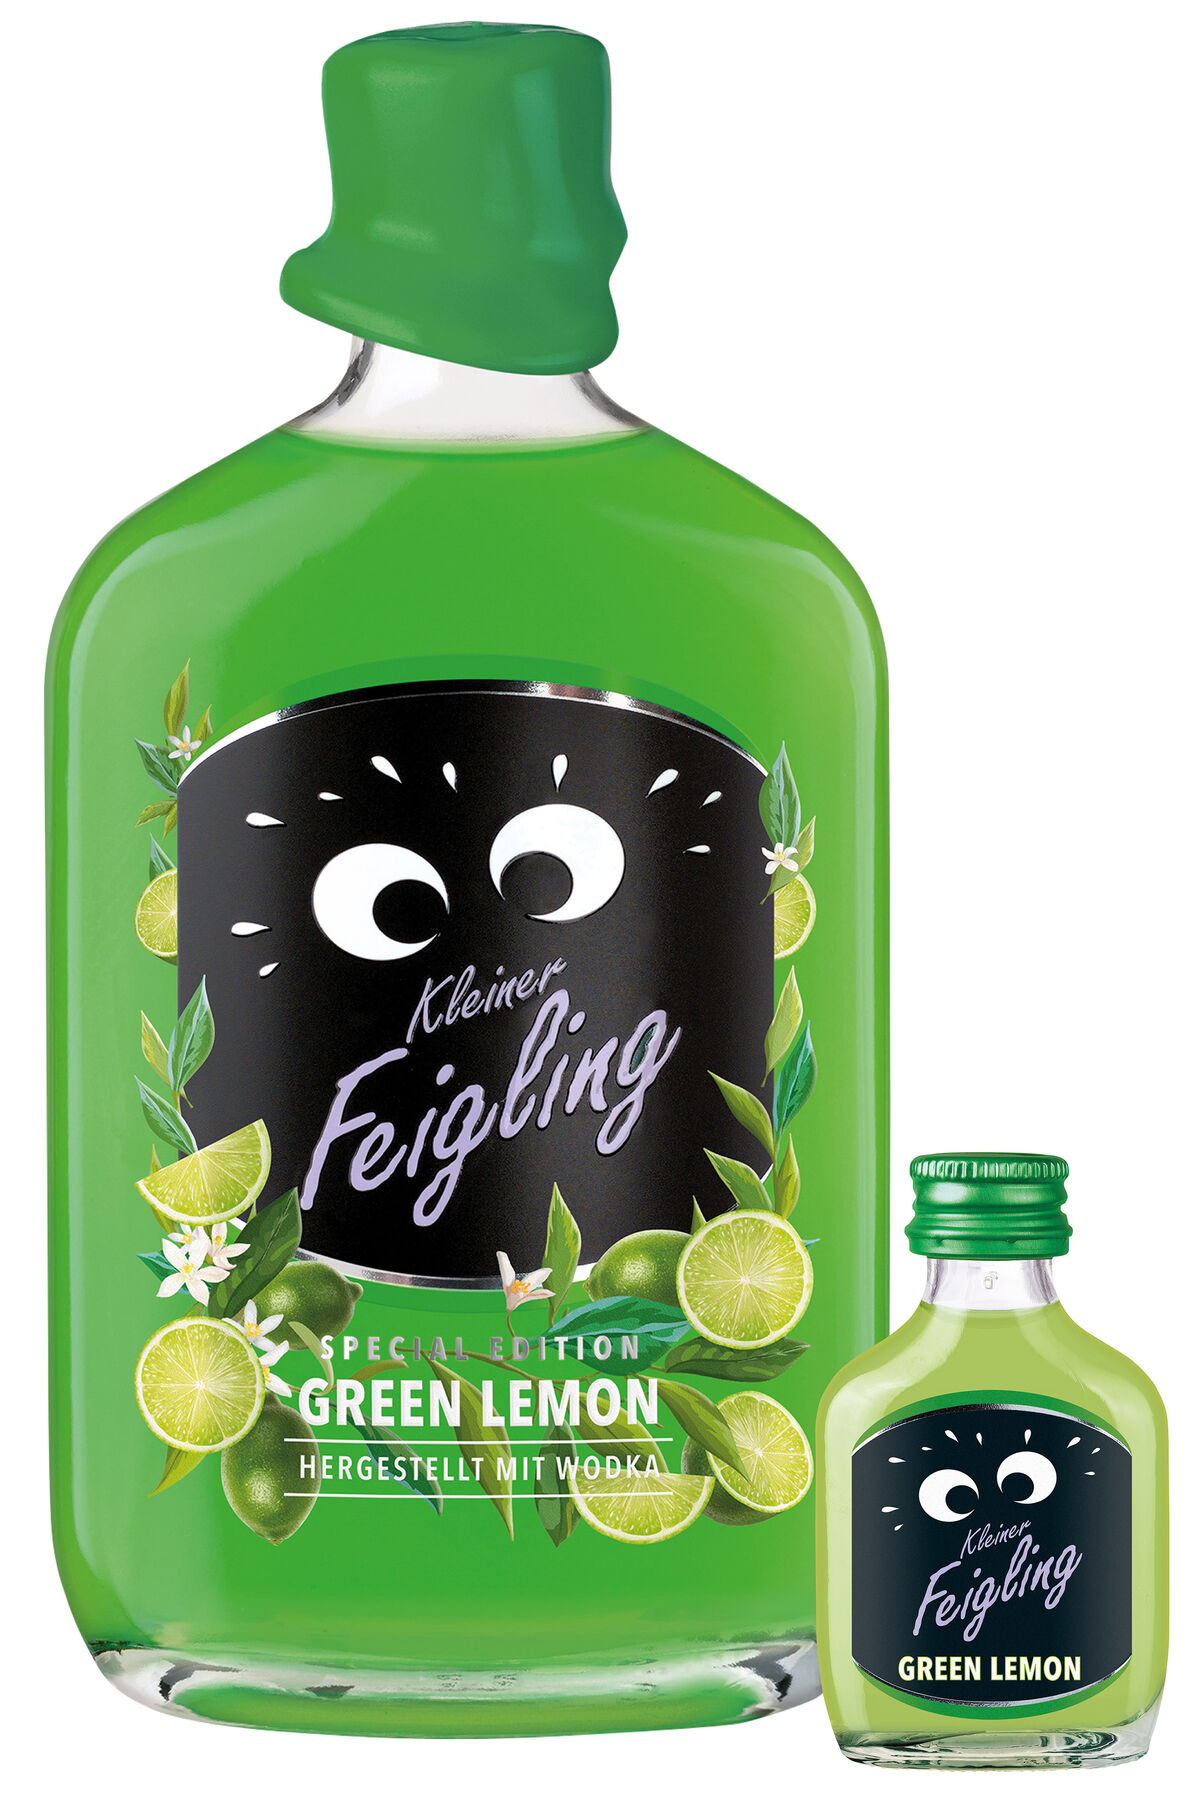 Green Mercurio Lemon Kleiner - Drinks Feigling